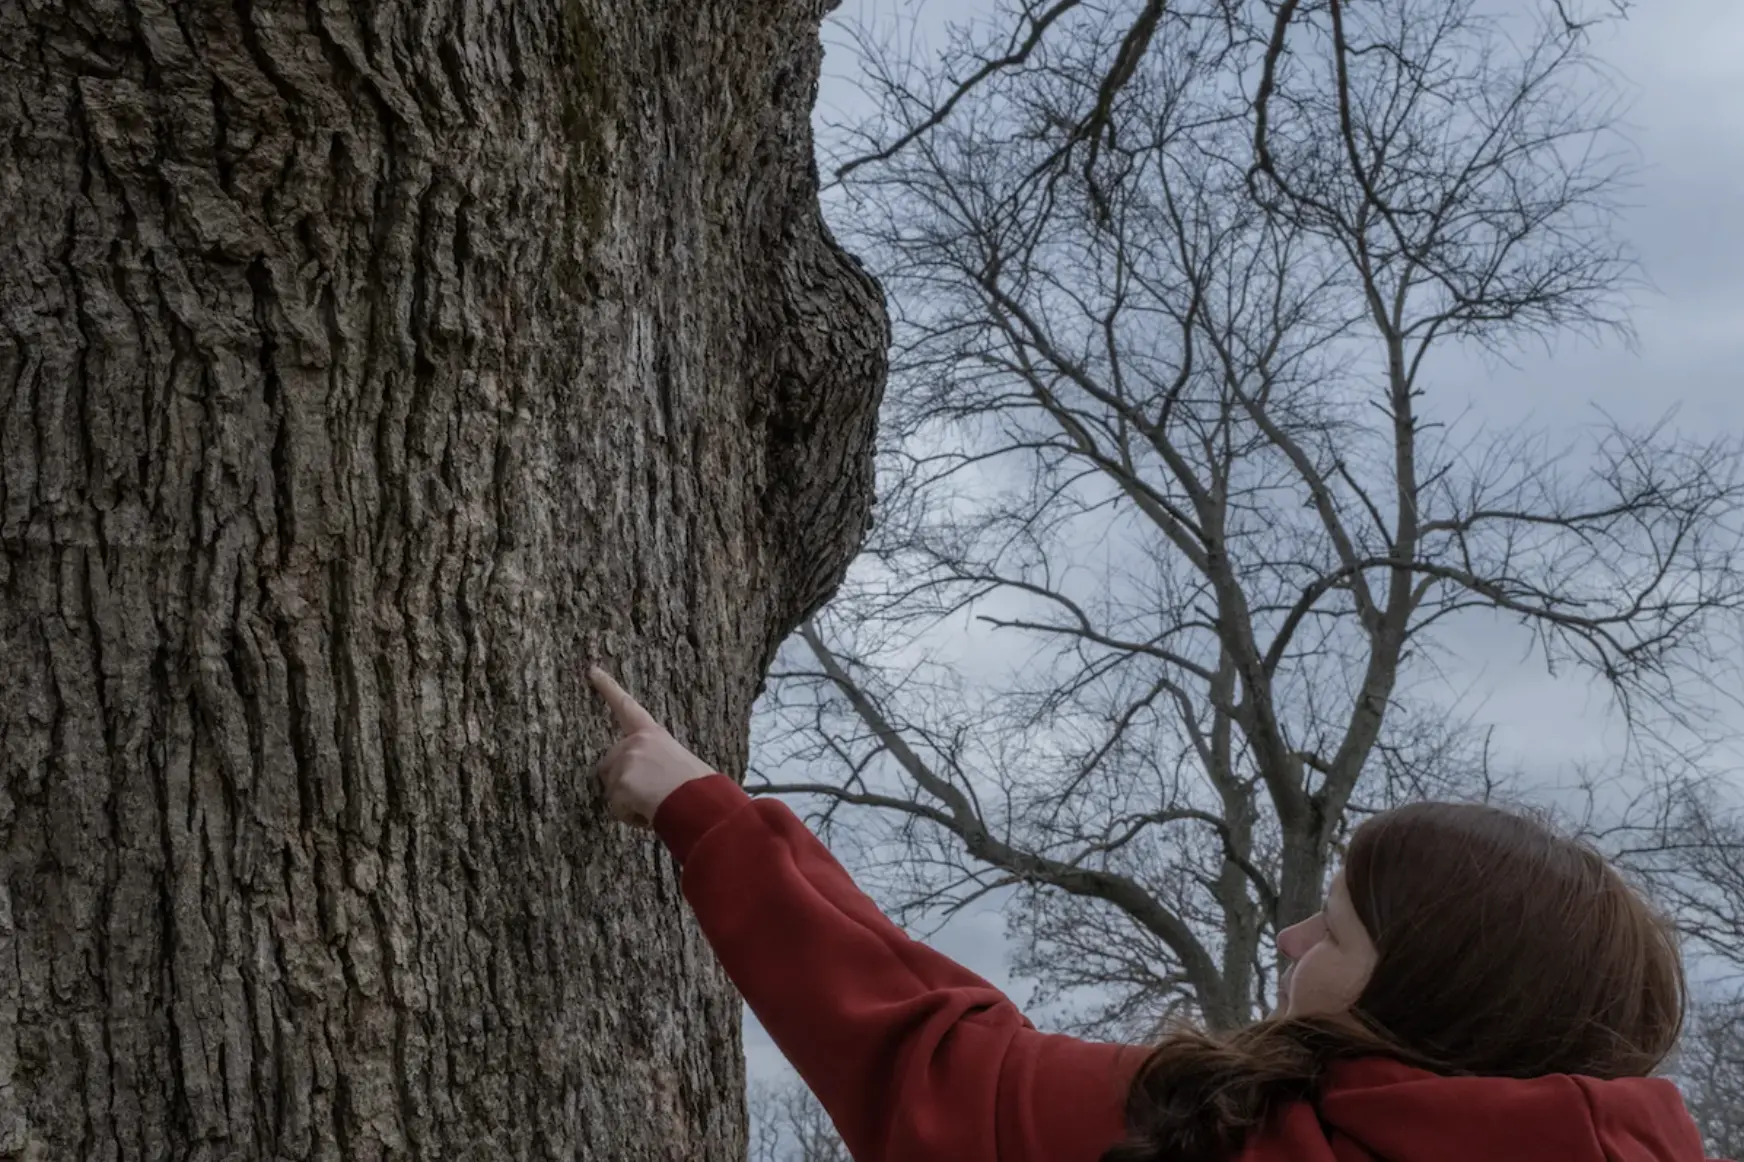 Jenny points to tree